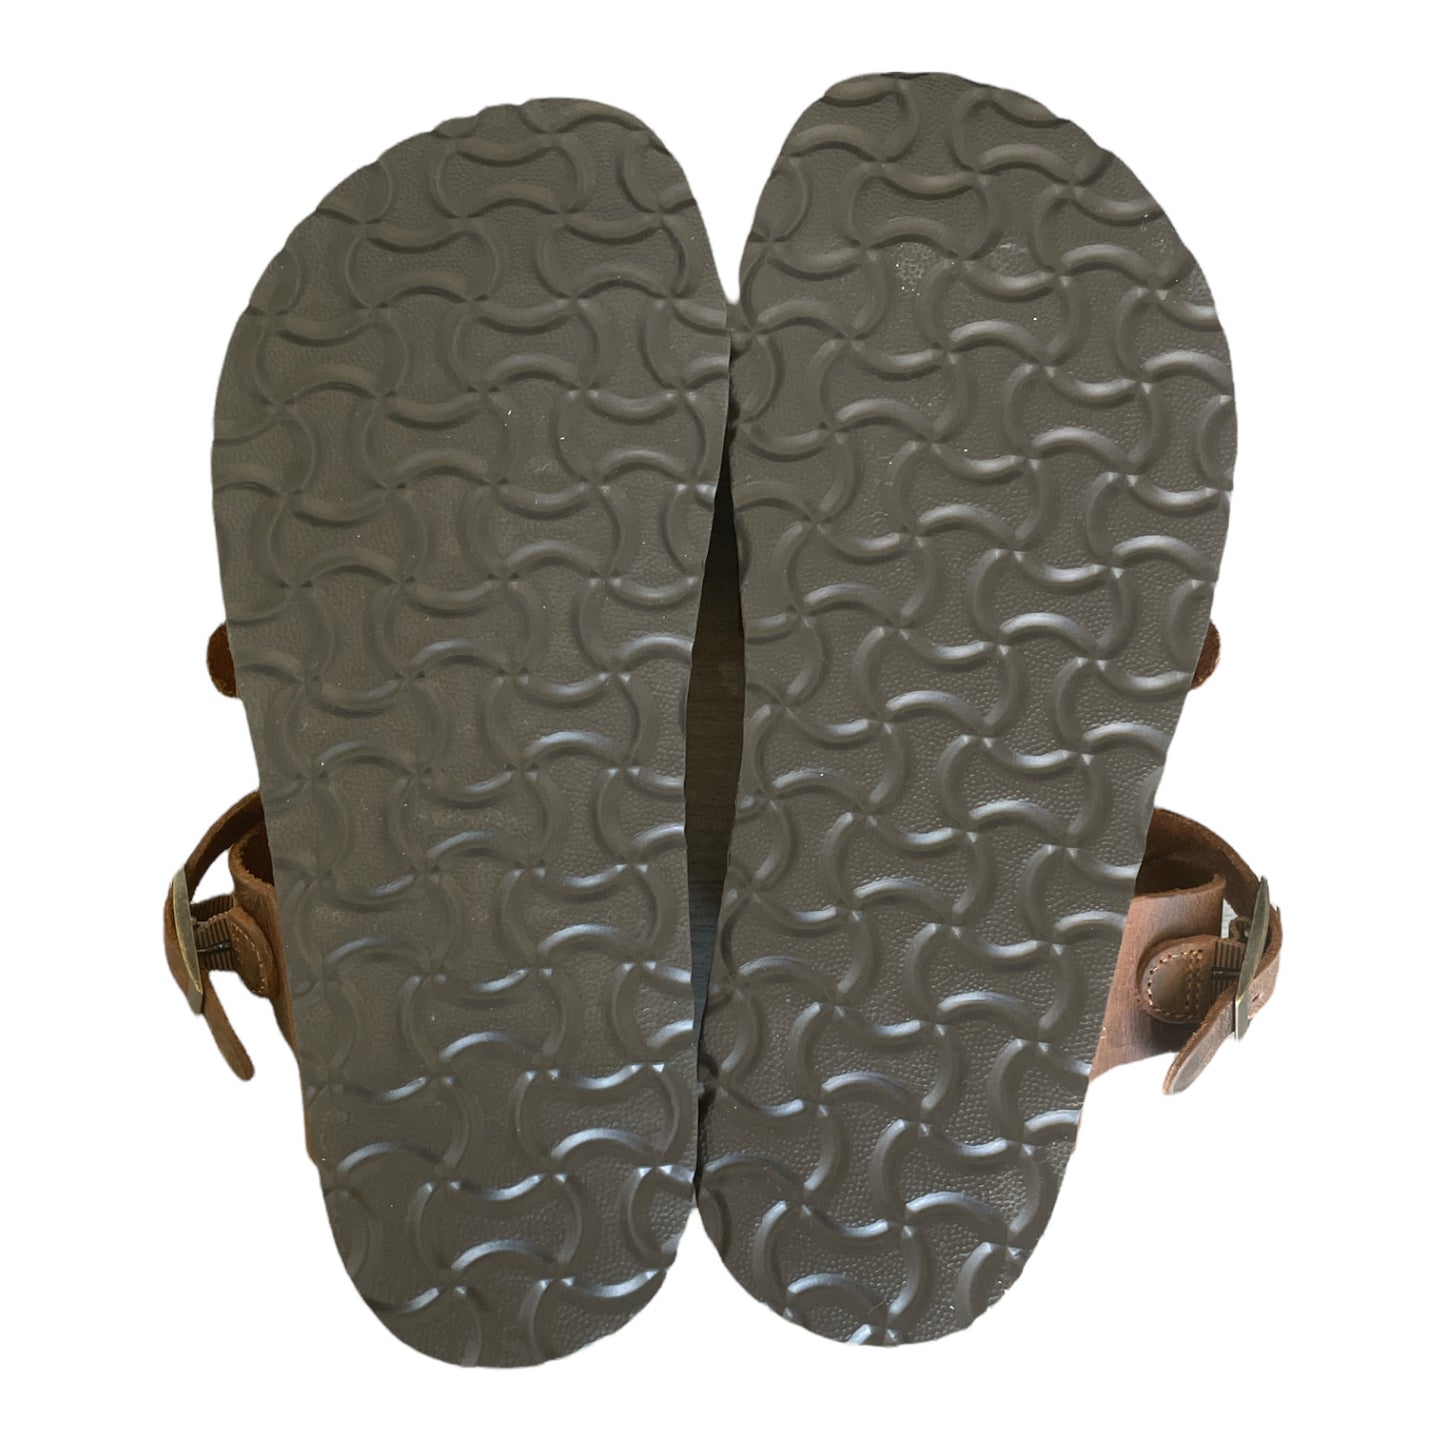 Mountain Sole Women's Birk Style Slip On Leather Sandals, Adj Buckle